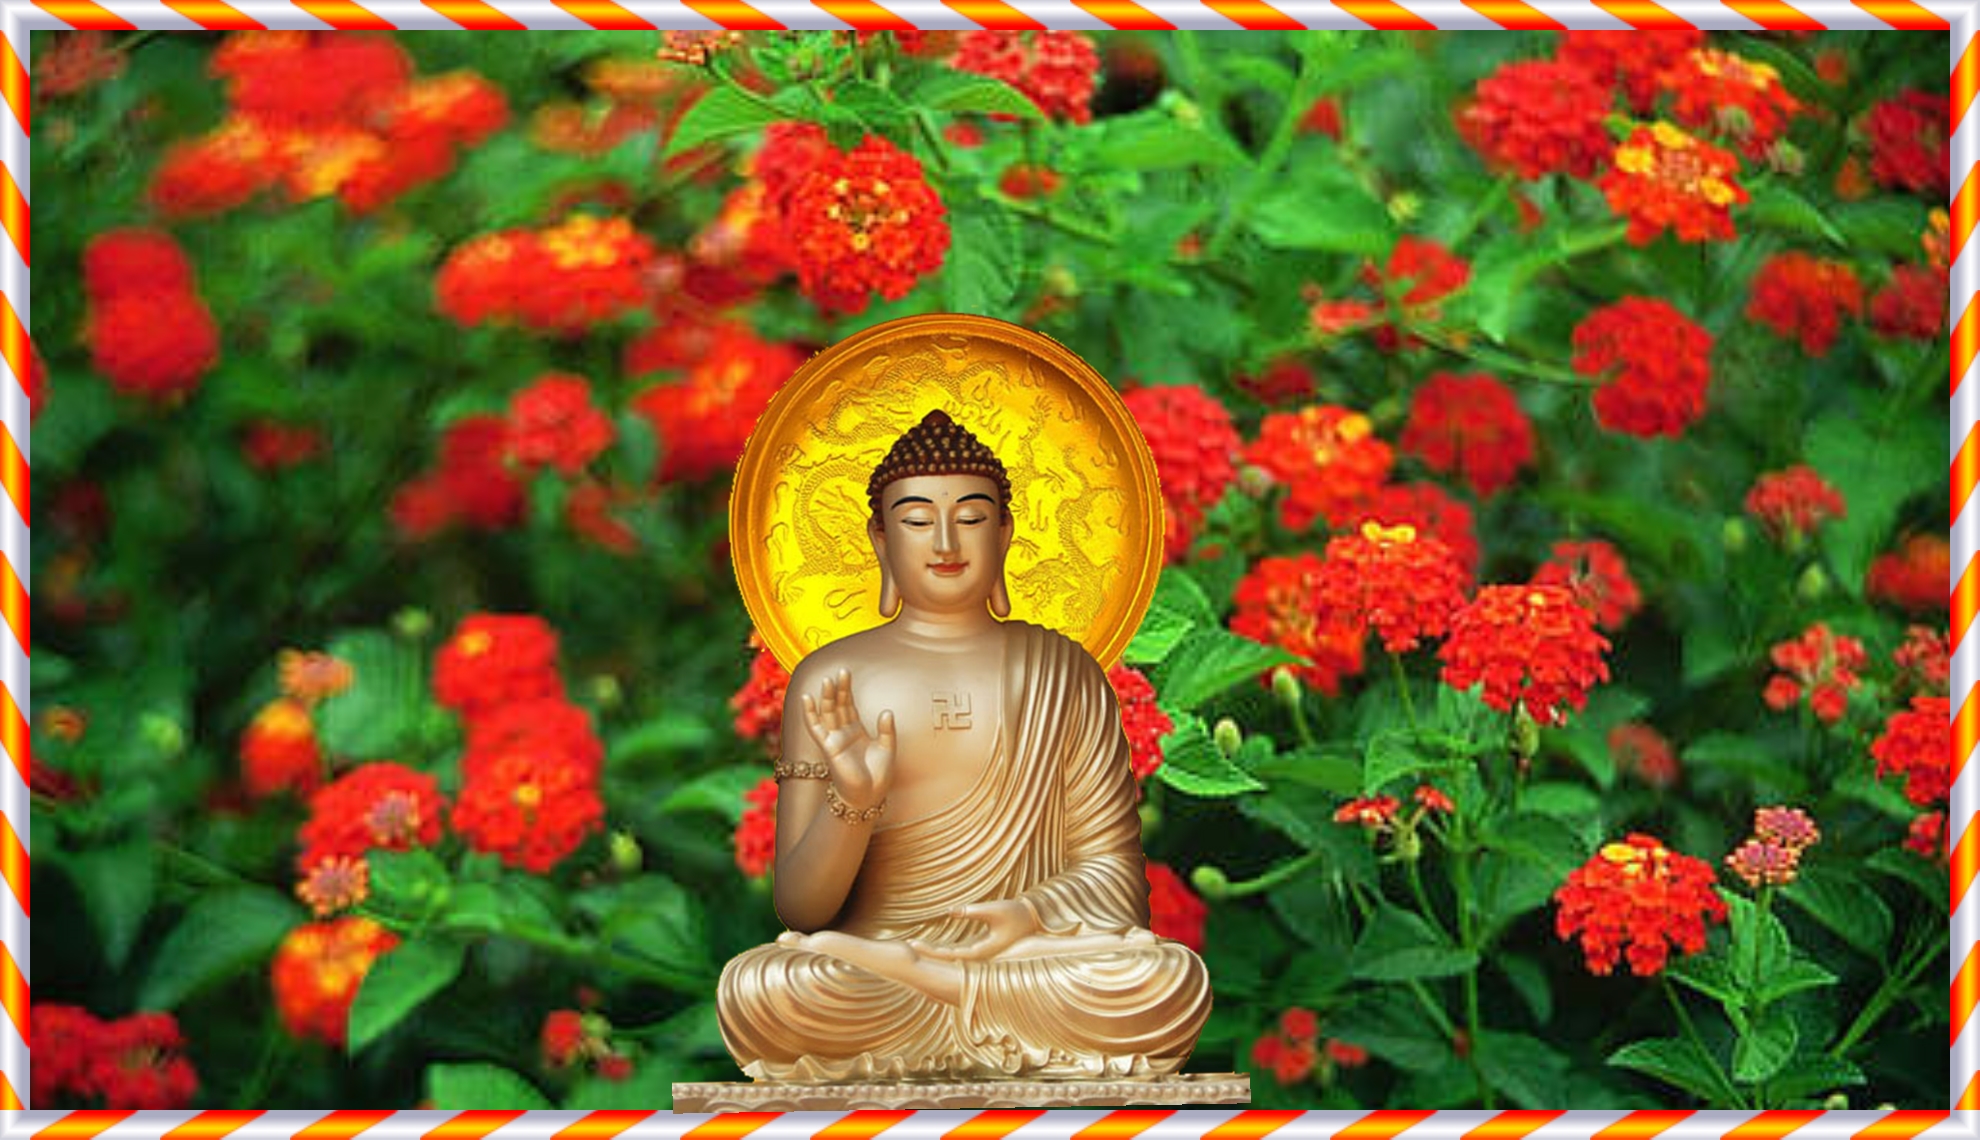 Phật A Di Đà: Hãy cùng chiêm ngưỡng hình ảnh vị Phật A Di Đà với vẻ đẹp thanh tịnh và tình thương vô biên. Ý nghĩa của nhân quả và chân lý sẽ được hiểu rõ hơn khi ngắm nhìn hình ảnh này.